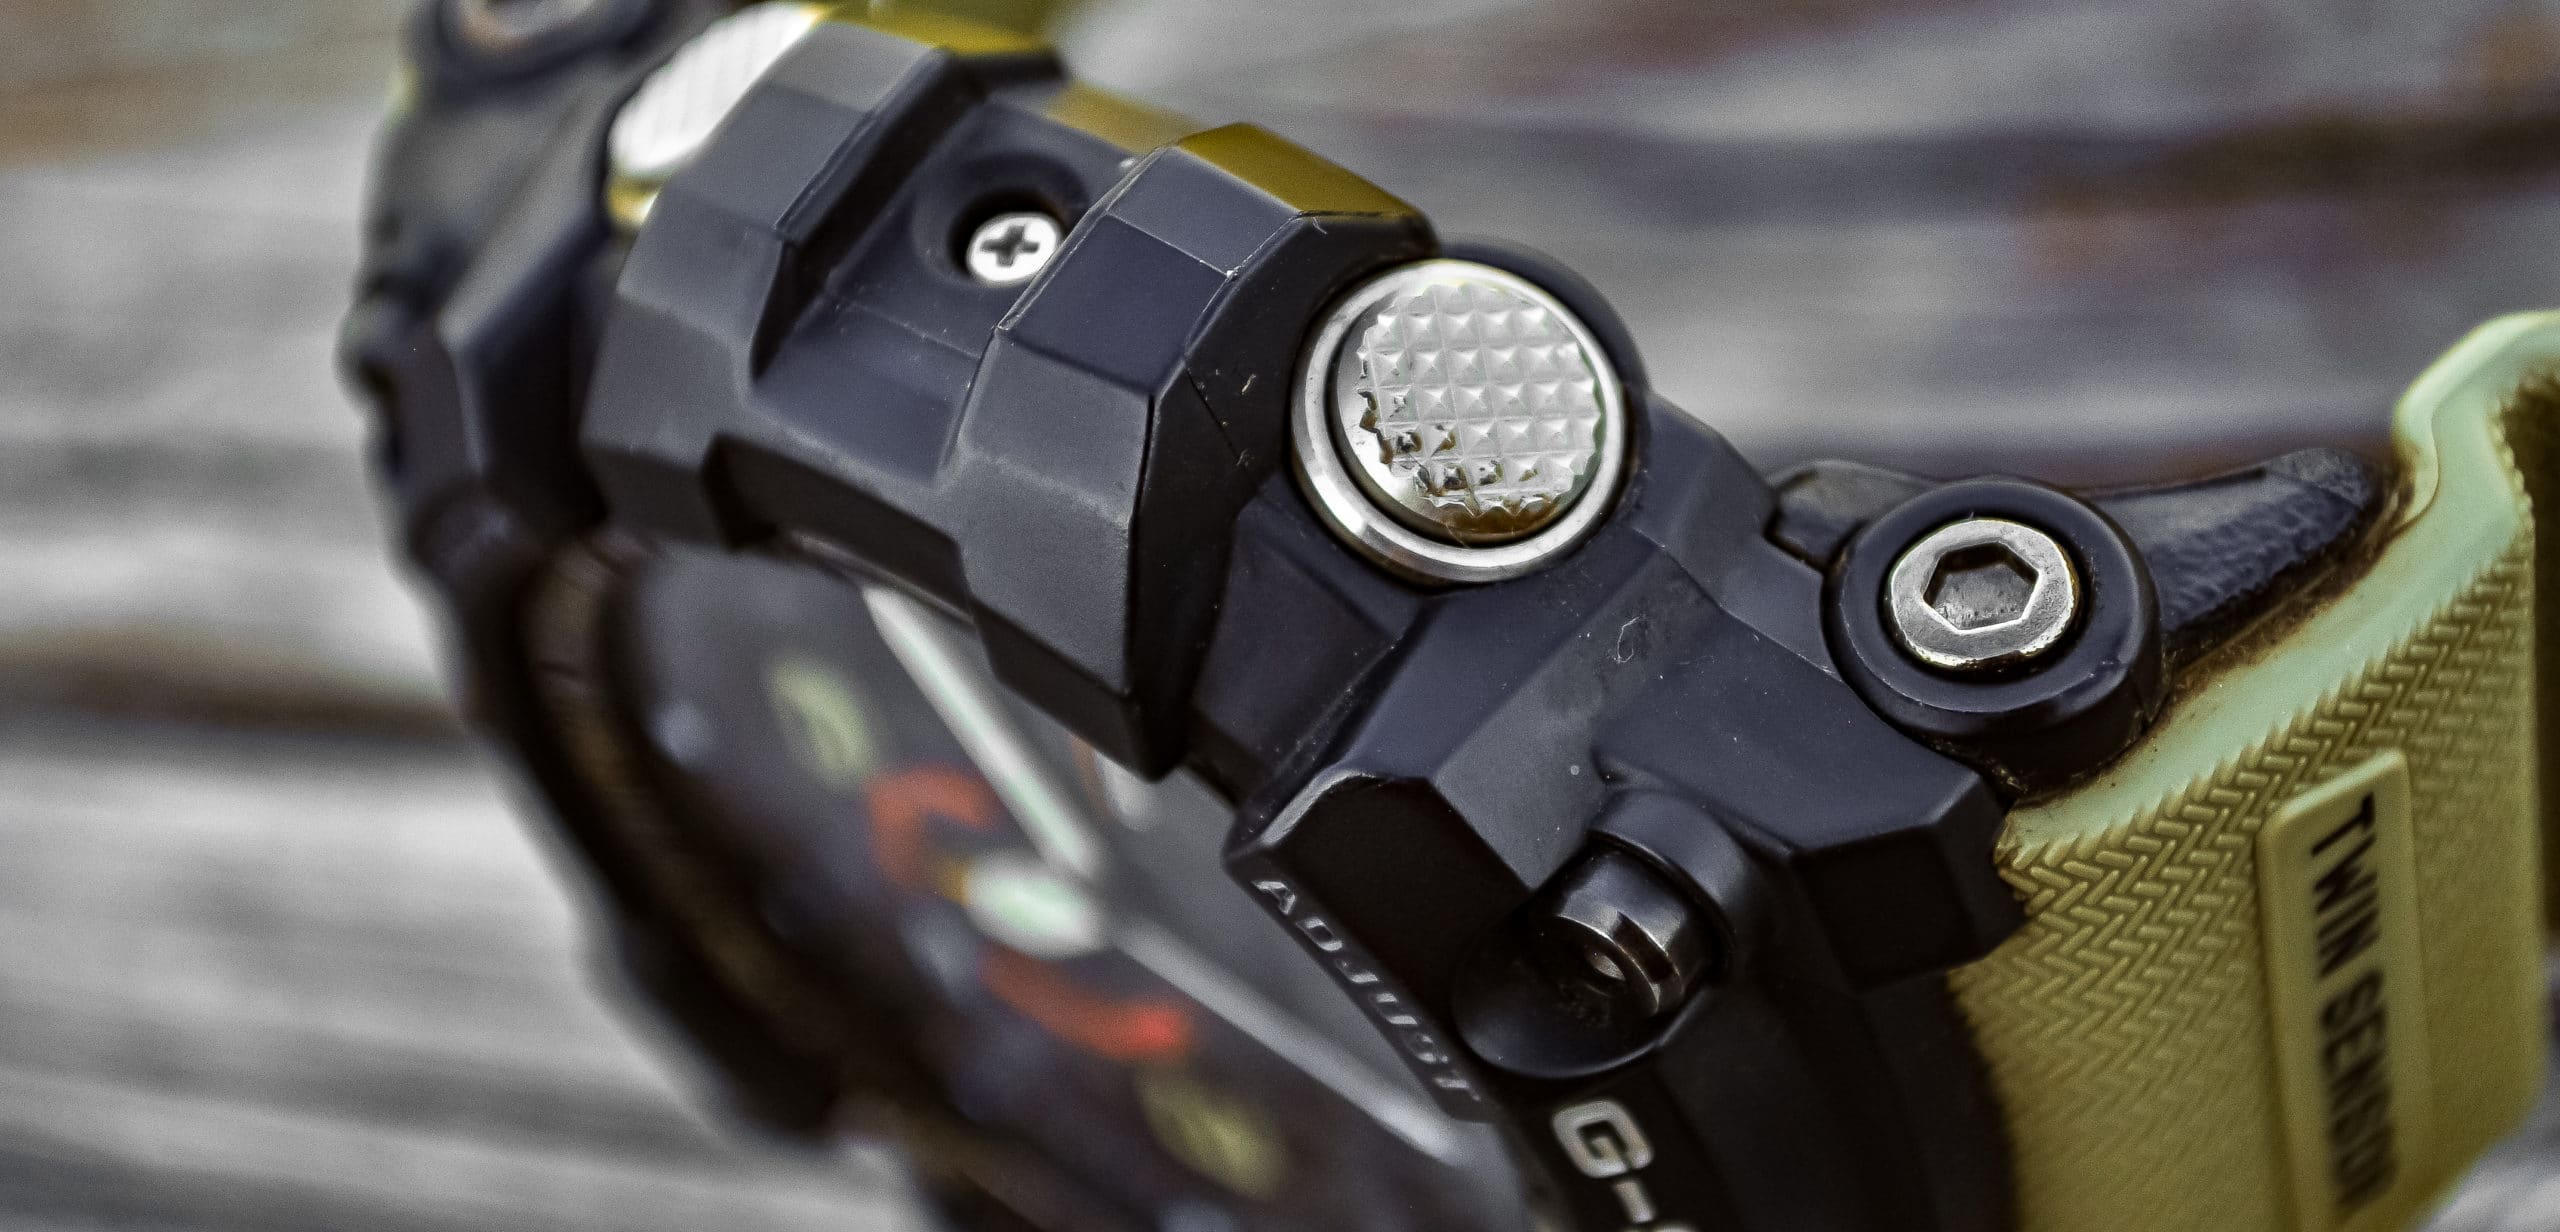 Casio] Mudmaster GG-1000-1AER : r/Watches